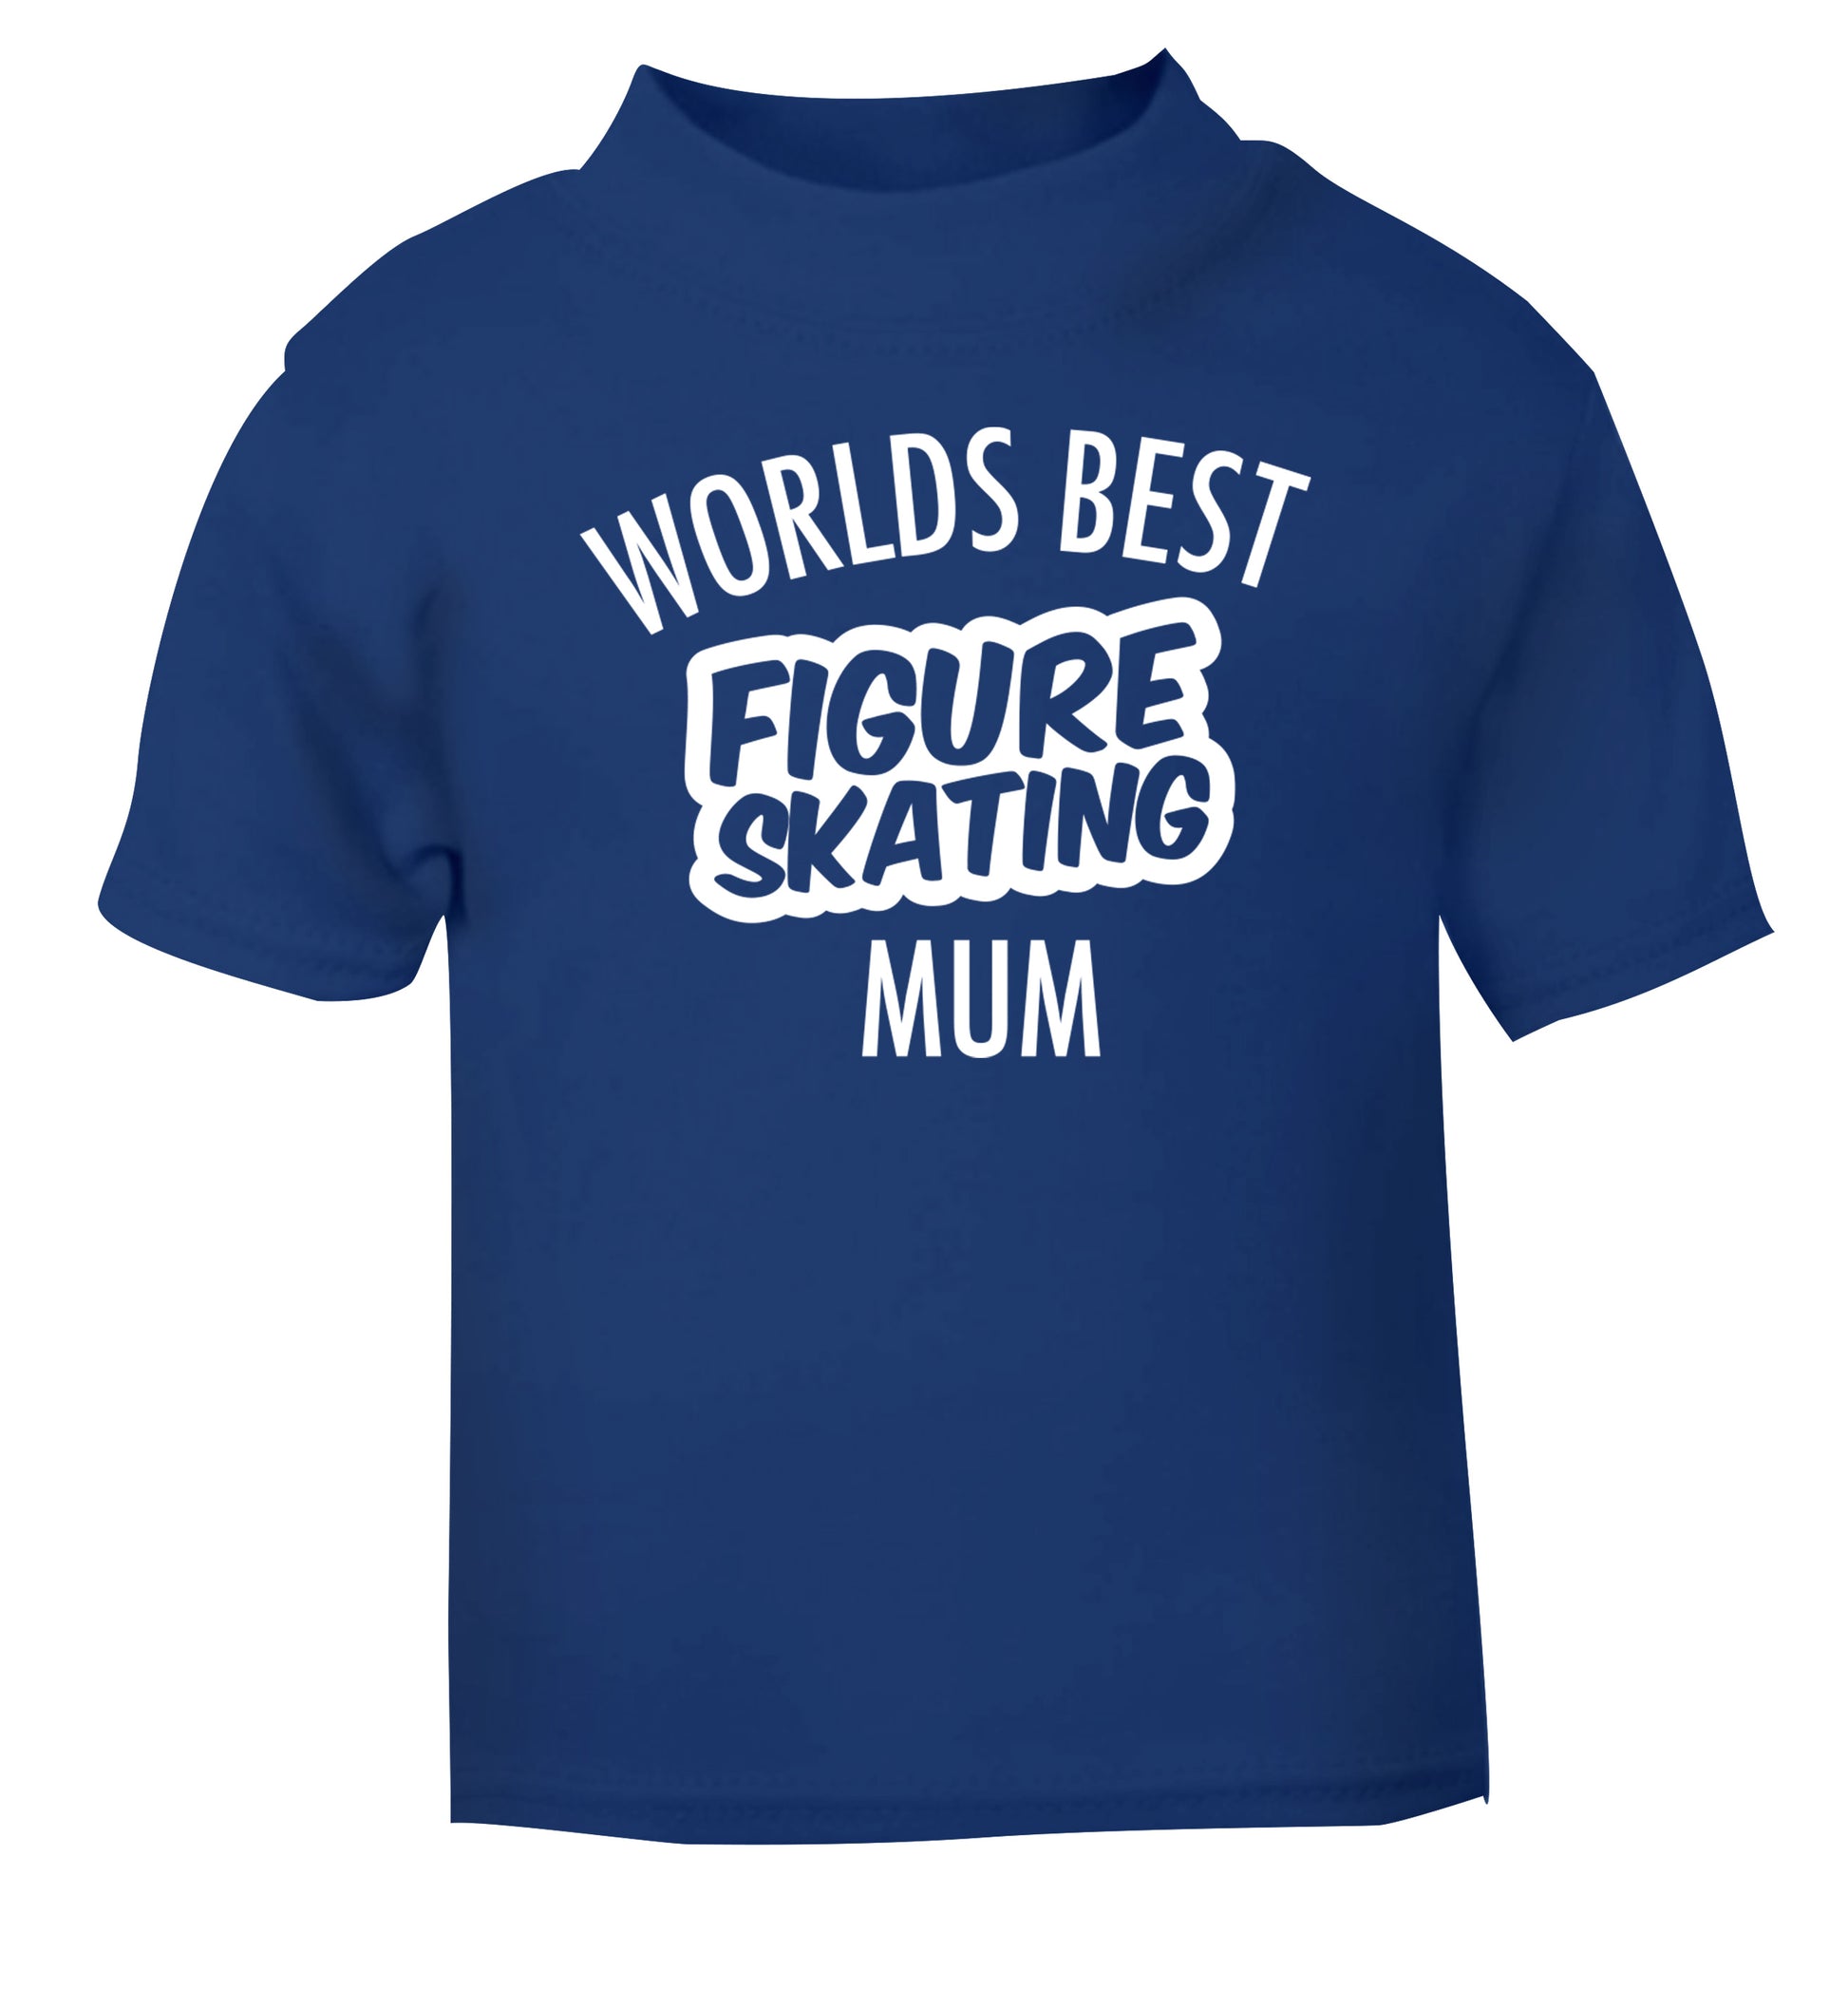 Worlds best figure skating mum blue Baby Toddler Tshirt 2 Years